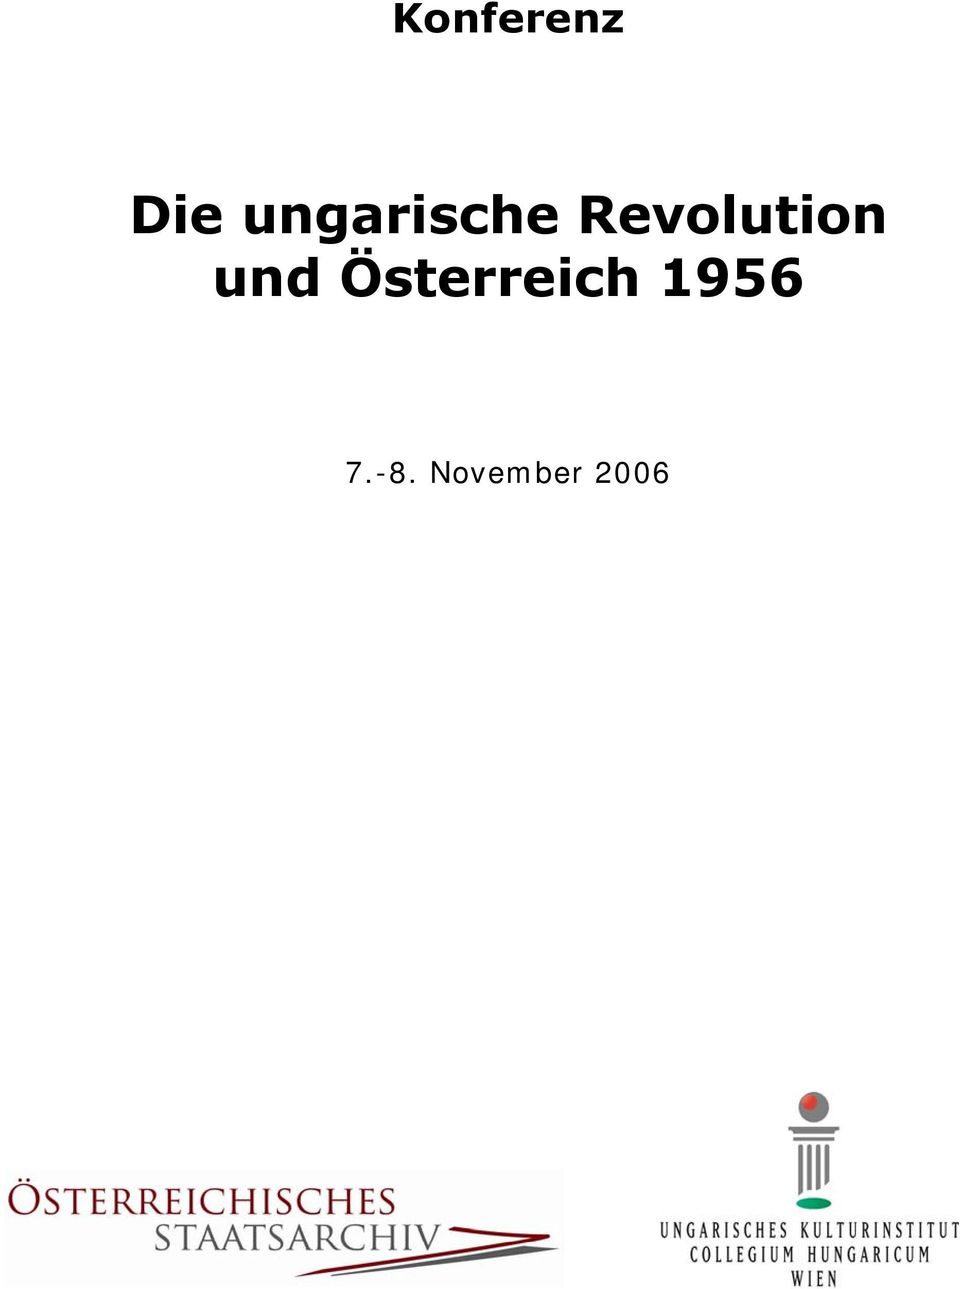 Revolution und